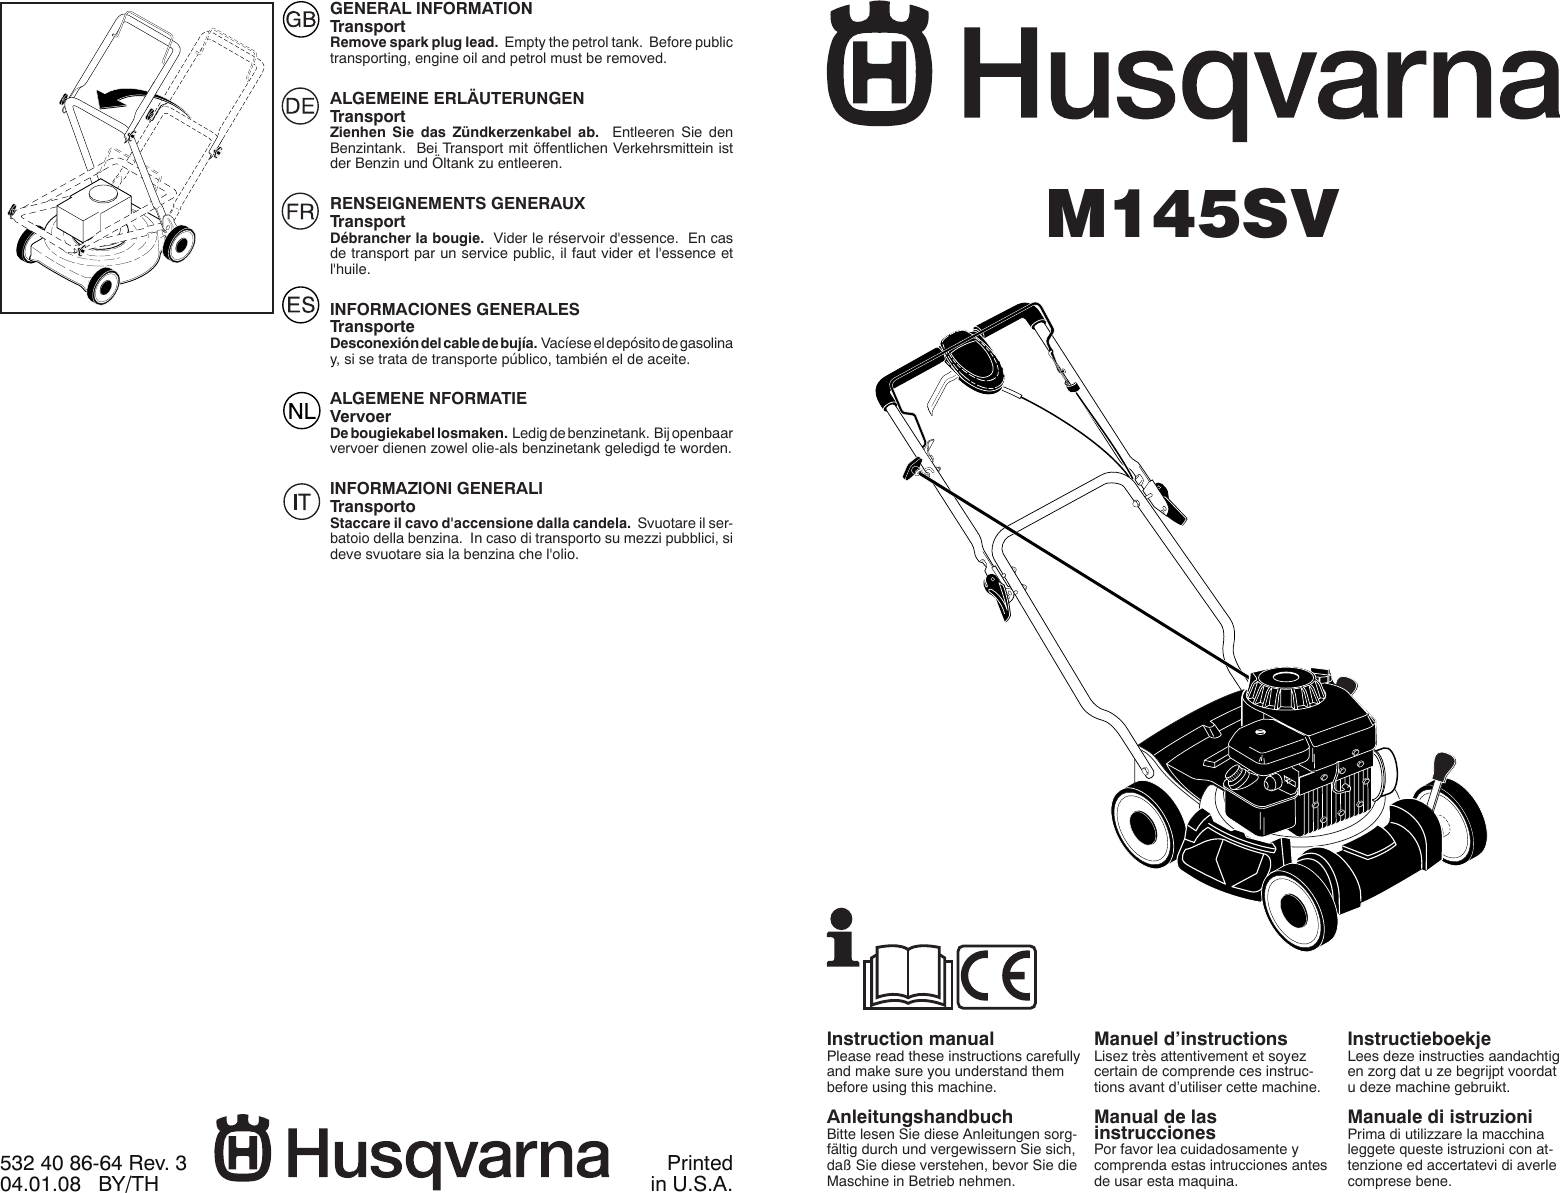 Husqvarna M 145Sv Users Manual OM, SV, 96141013201, 2008 04, FR, ES, IT, NL